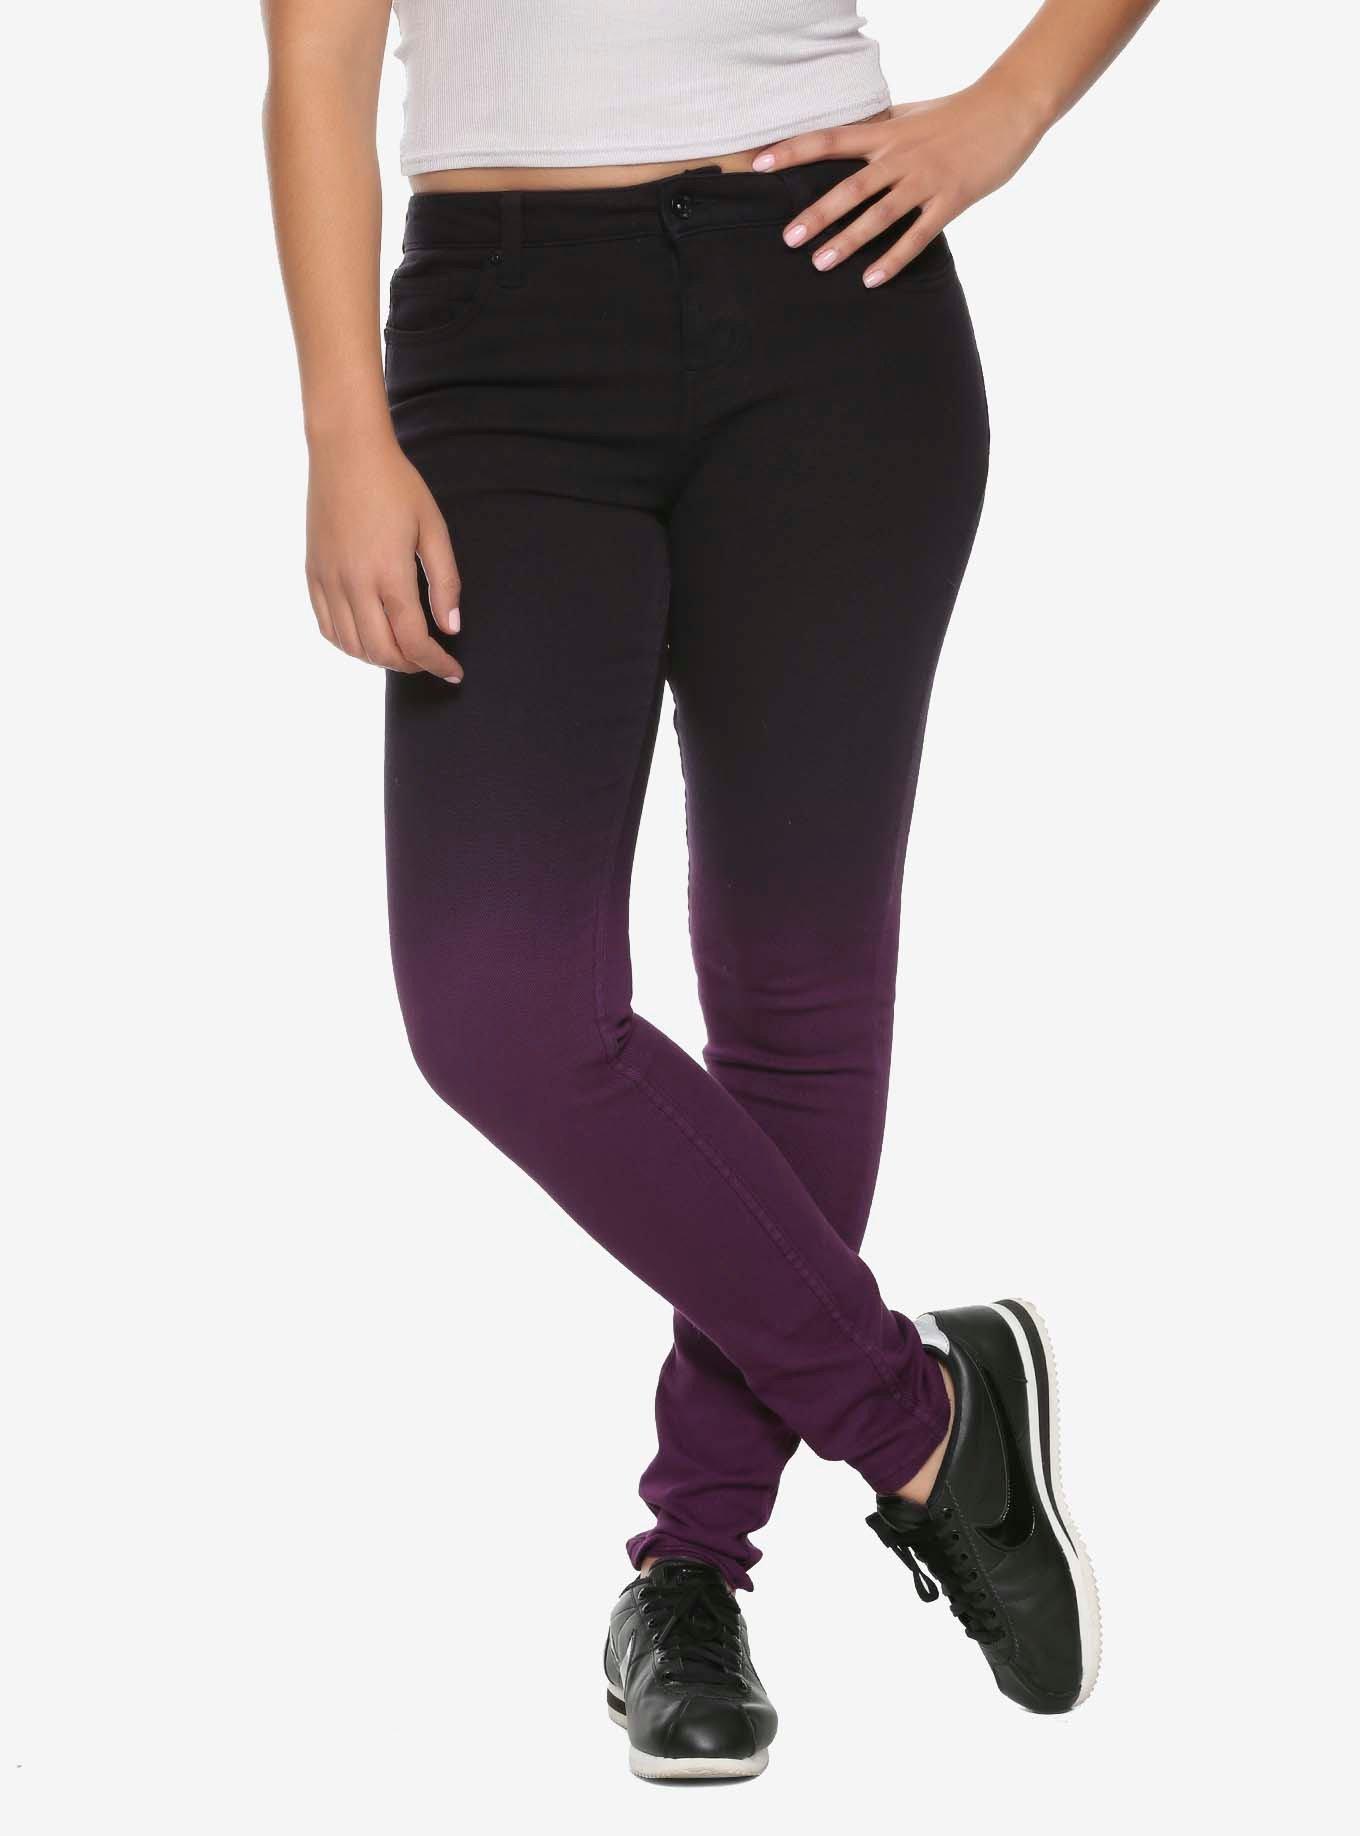 HT Denim Purple Ombre Low-Rise Skinny Jeans, PURPLE, hi-res